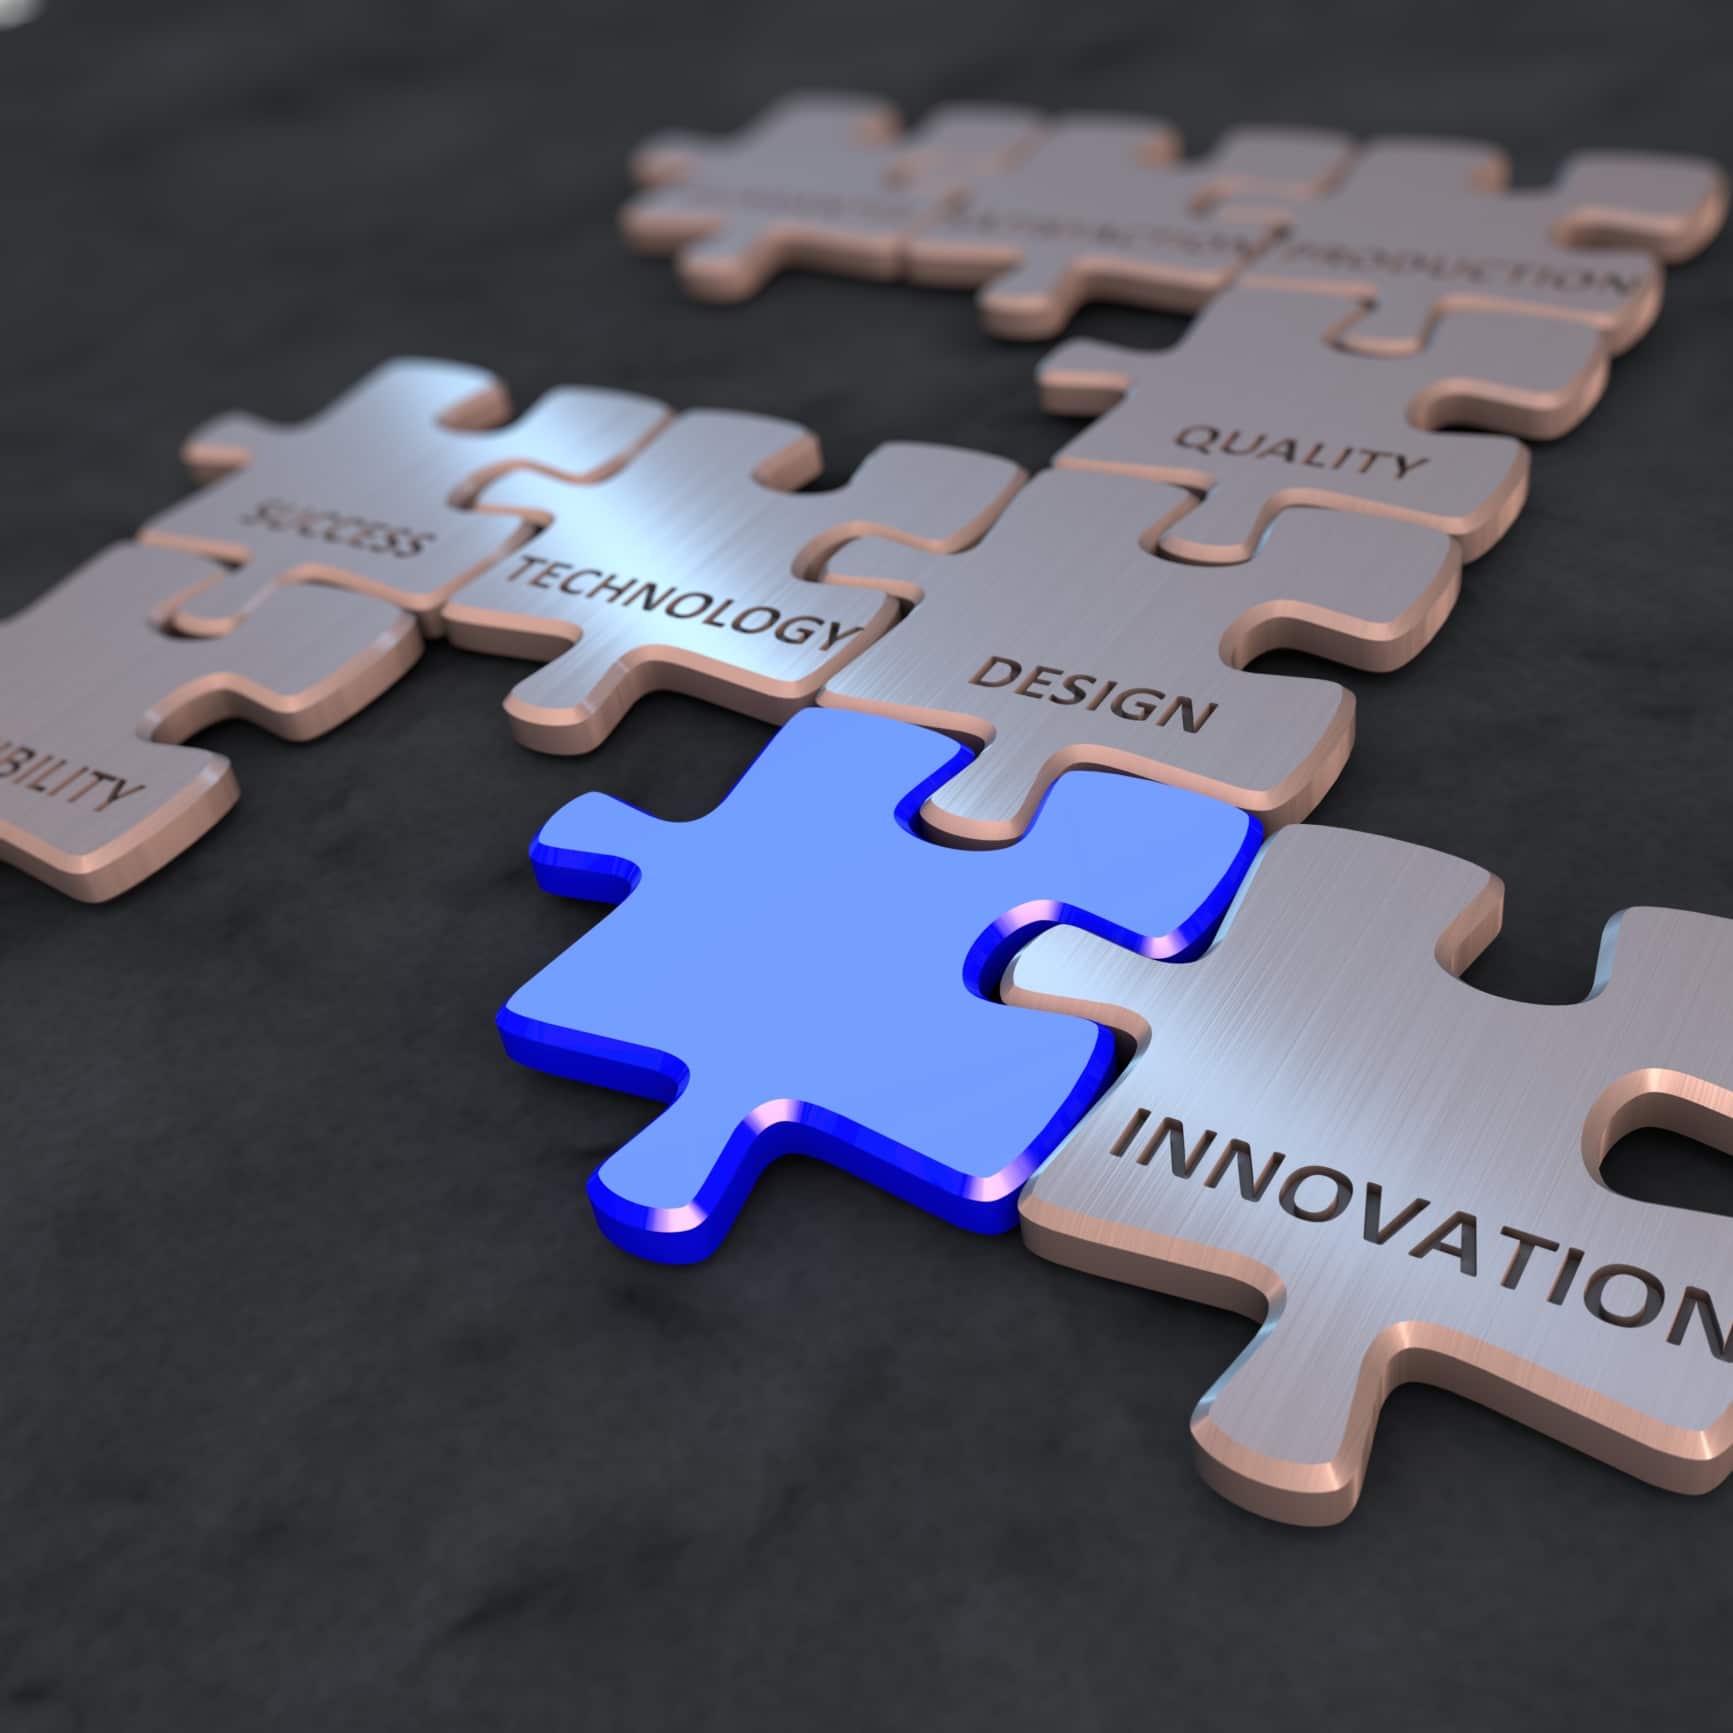 ¿Cómo descubrir oportunidades de innovación en tu empresa?